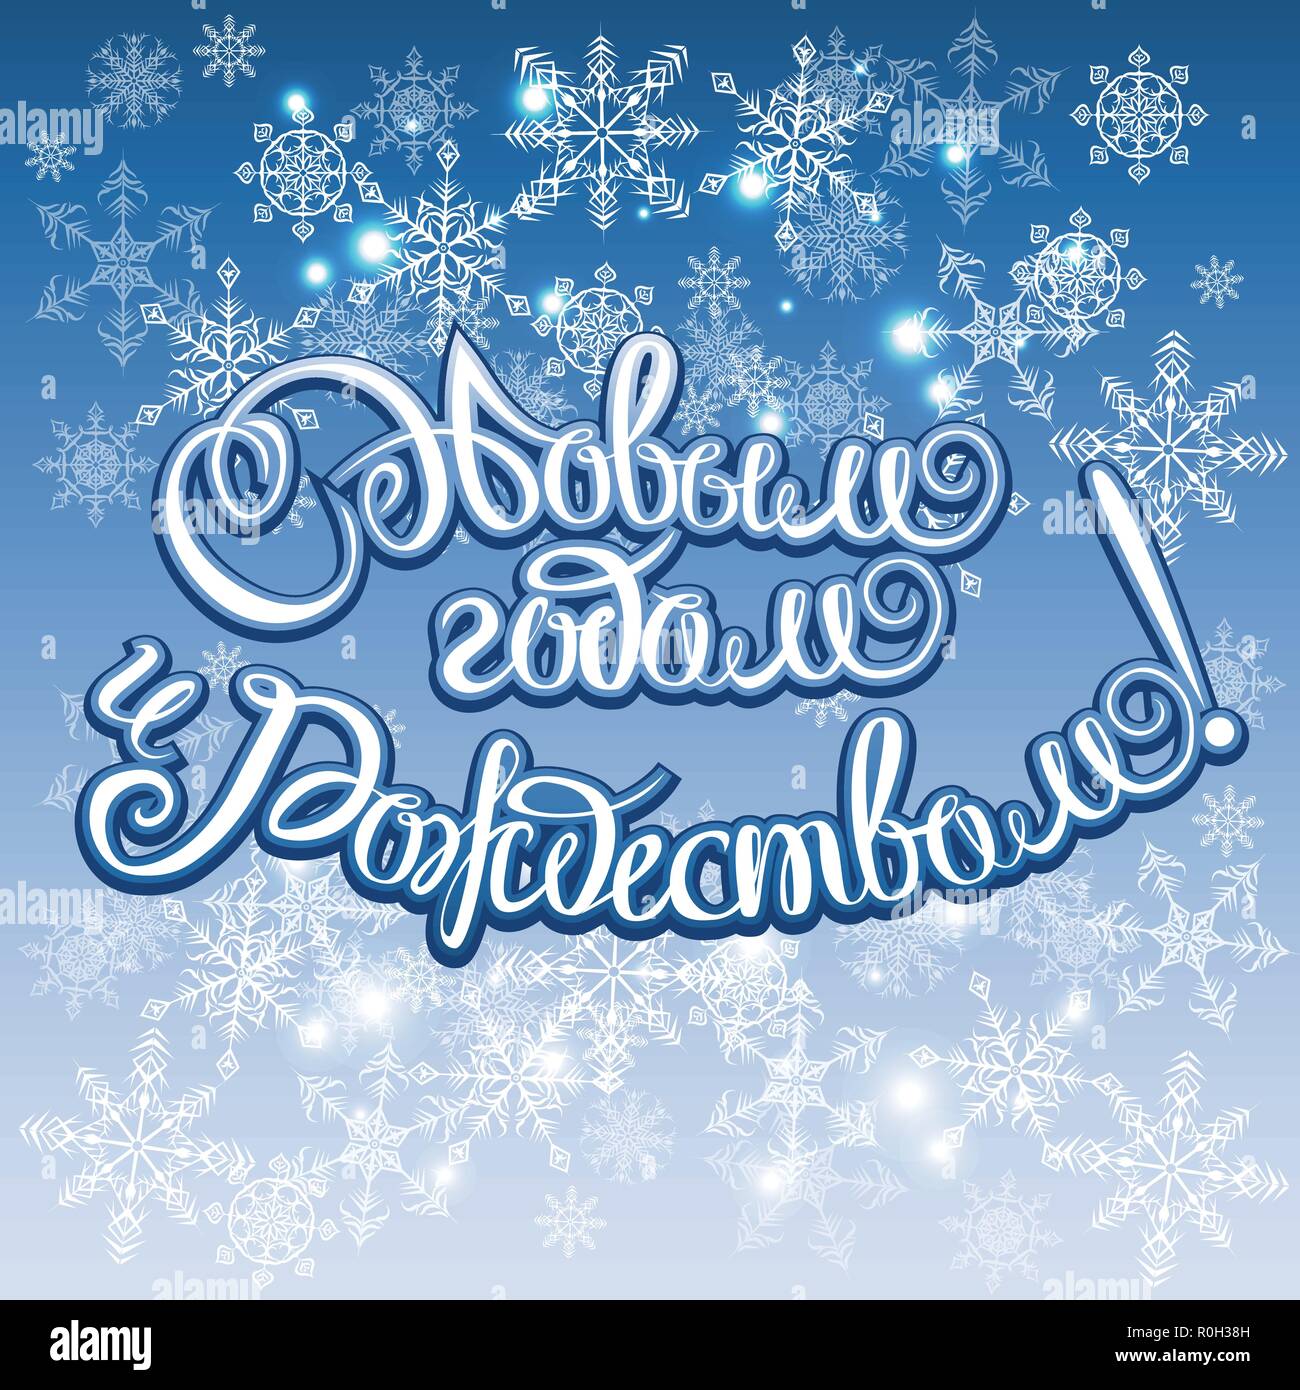 Buon Natale In Russo.Felice Anno Nuovo Russo E Buon Natale Calligraphy Lettering Happy Holiday Greeting Card Iscrizione Immagine E Vettoriale Alamy